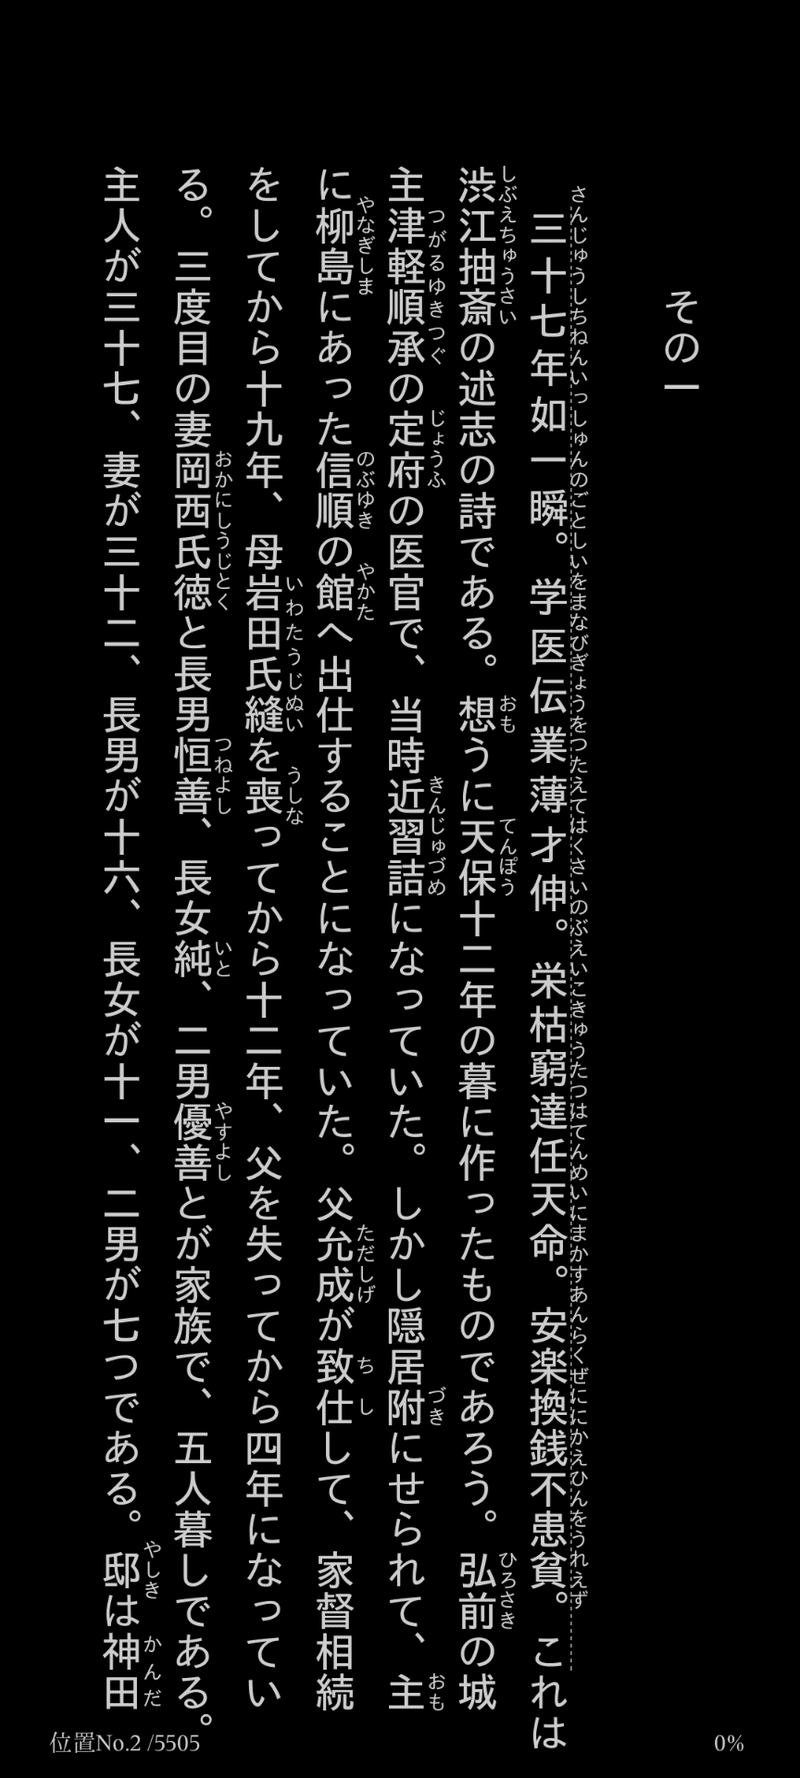 Kindleアプリで『渋江抽斎』冒頭を開いた画面のスクリーンショット。テキスト内容は割愛する。